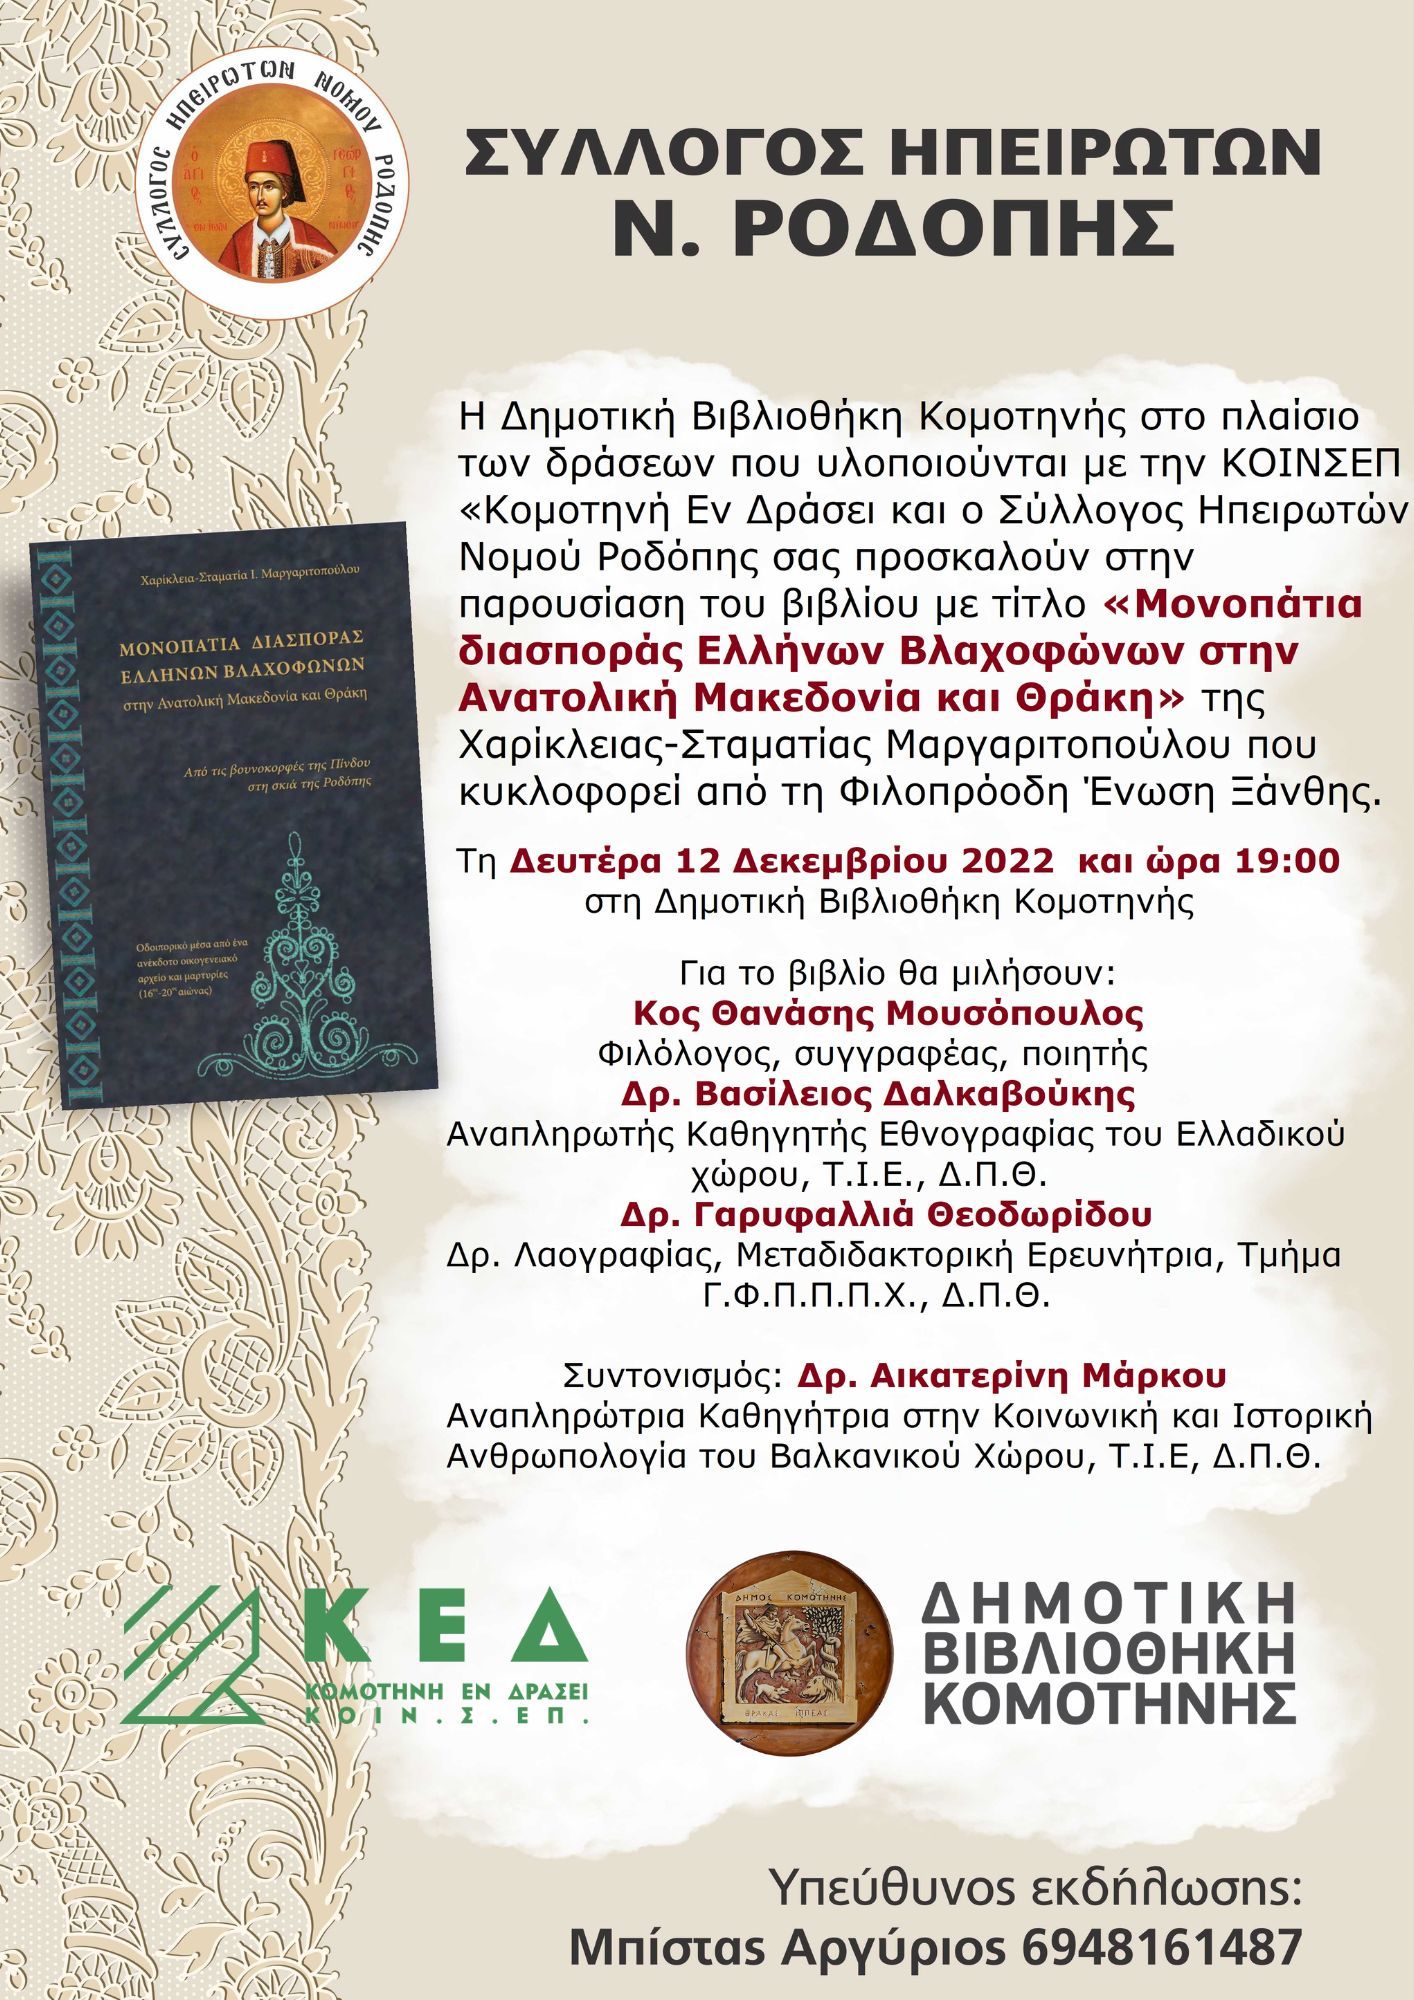 Παρουσίαση βιβλίου «Μονοπάτια διασποράς Ελλήνων Βλαχοφώνων στην Ανατολική Μακεδονία και Θράκη»  της Χαρίκλειας-Σταματίας Μαργαριτοπούλου